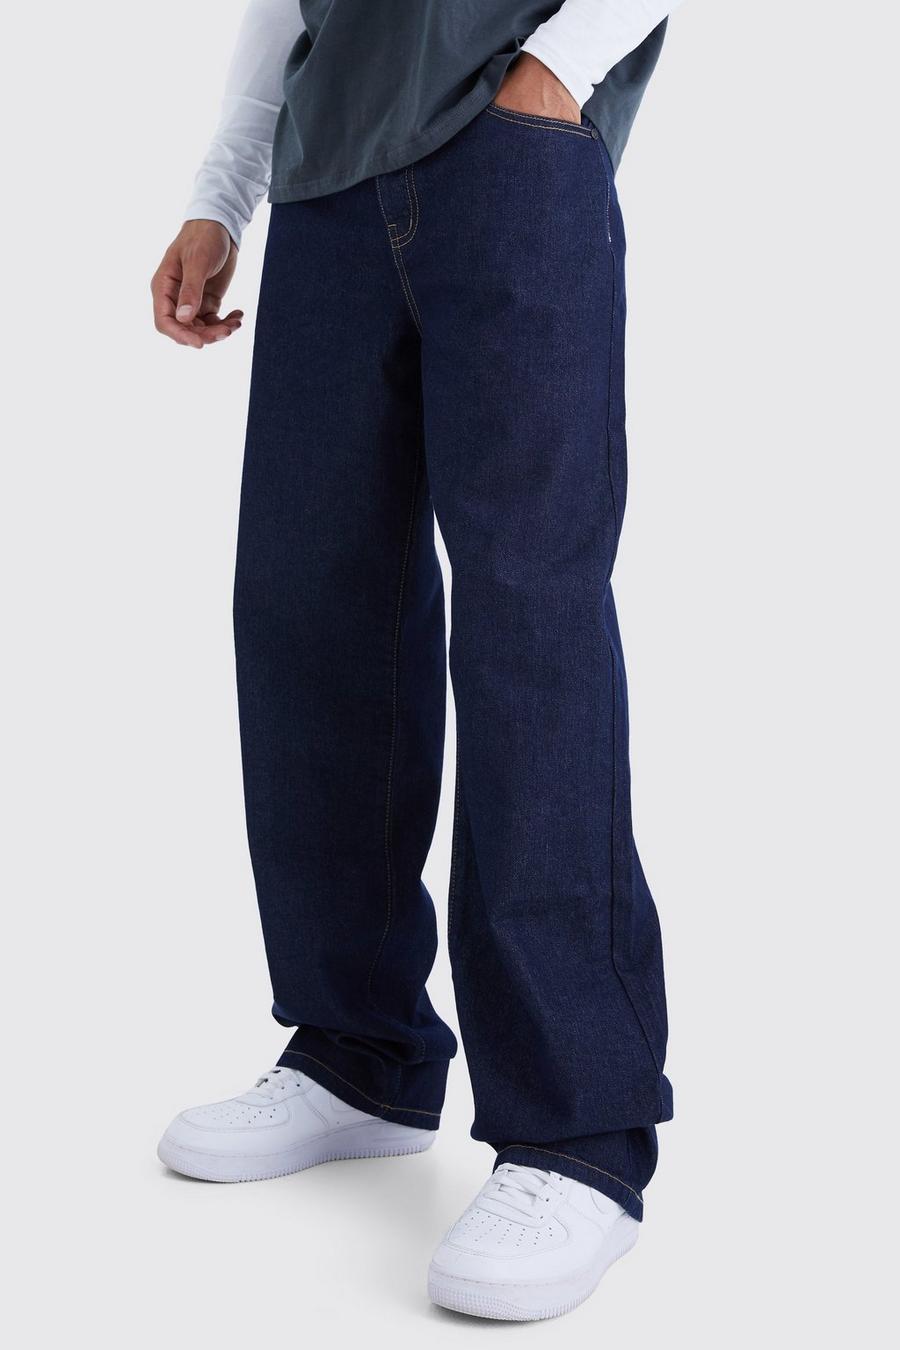 Jeans Tall extra comodi in denim rigido, Indigo azzurro